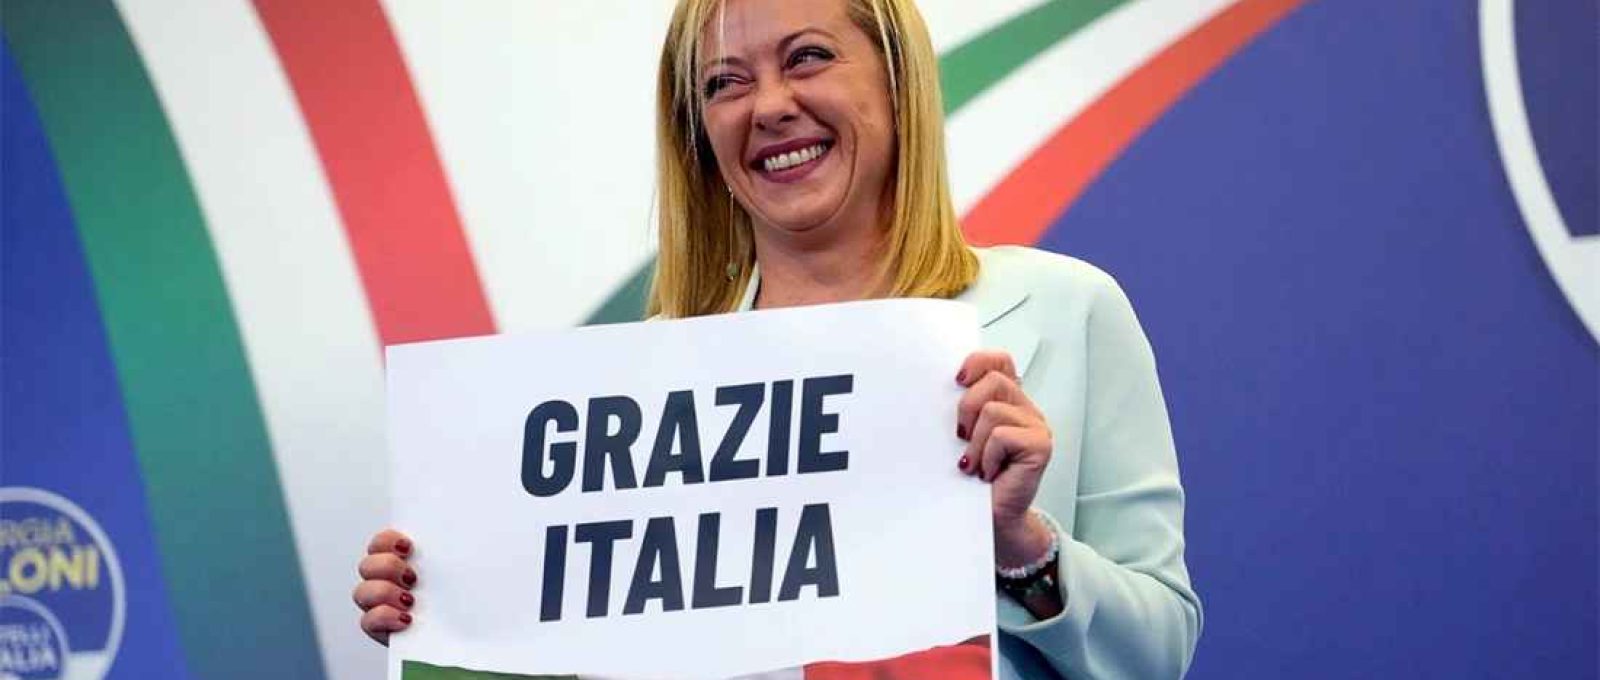 Giorgia Meloni segura cartaz com os dizeres "Obrigado Itália" na sede de seu partido em Roma, em 26 de setembro de 2022 (Gregorio Bórgia/AP).